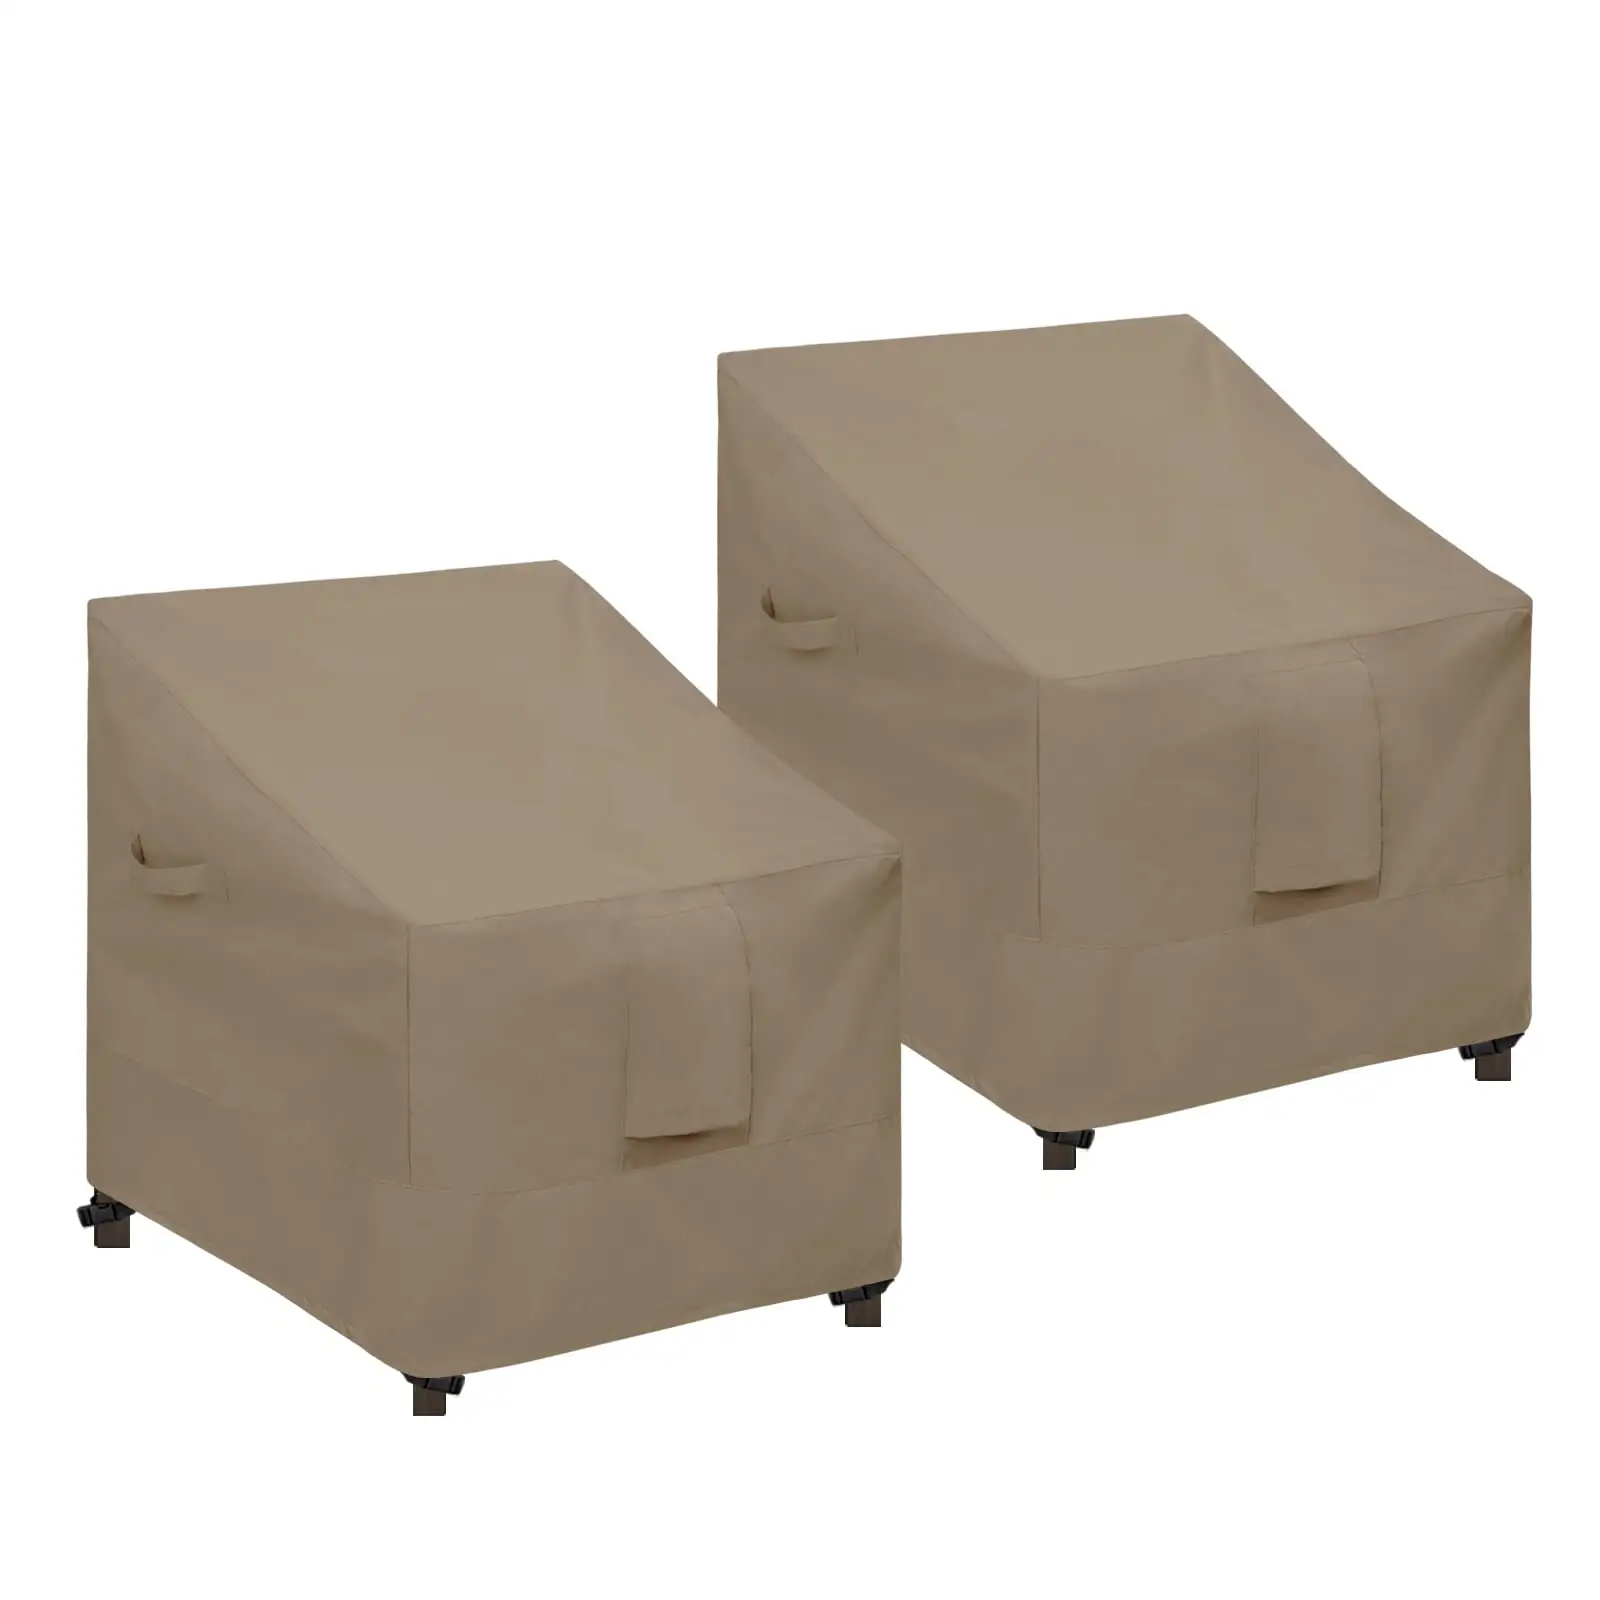 Sarung kursi teras, sarung kursi luar ruangan anti UV, penutup furnitur teras rumput tahan air cocok untuk kursi makan dapat ditumpuk